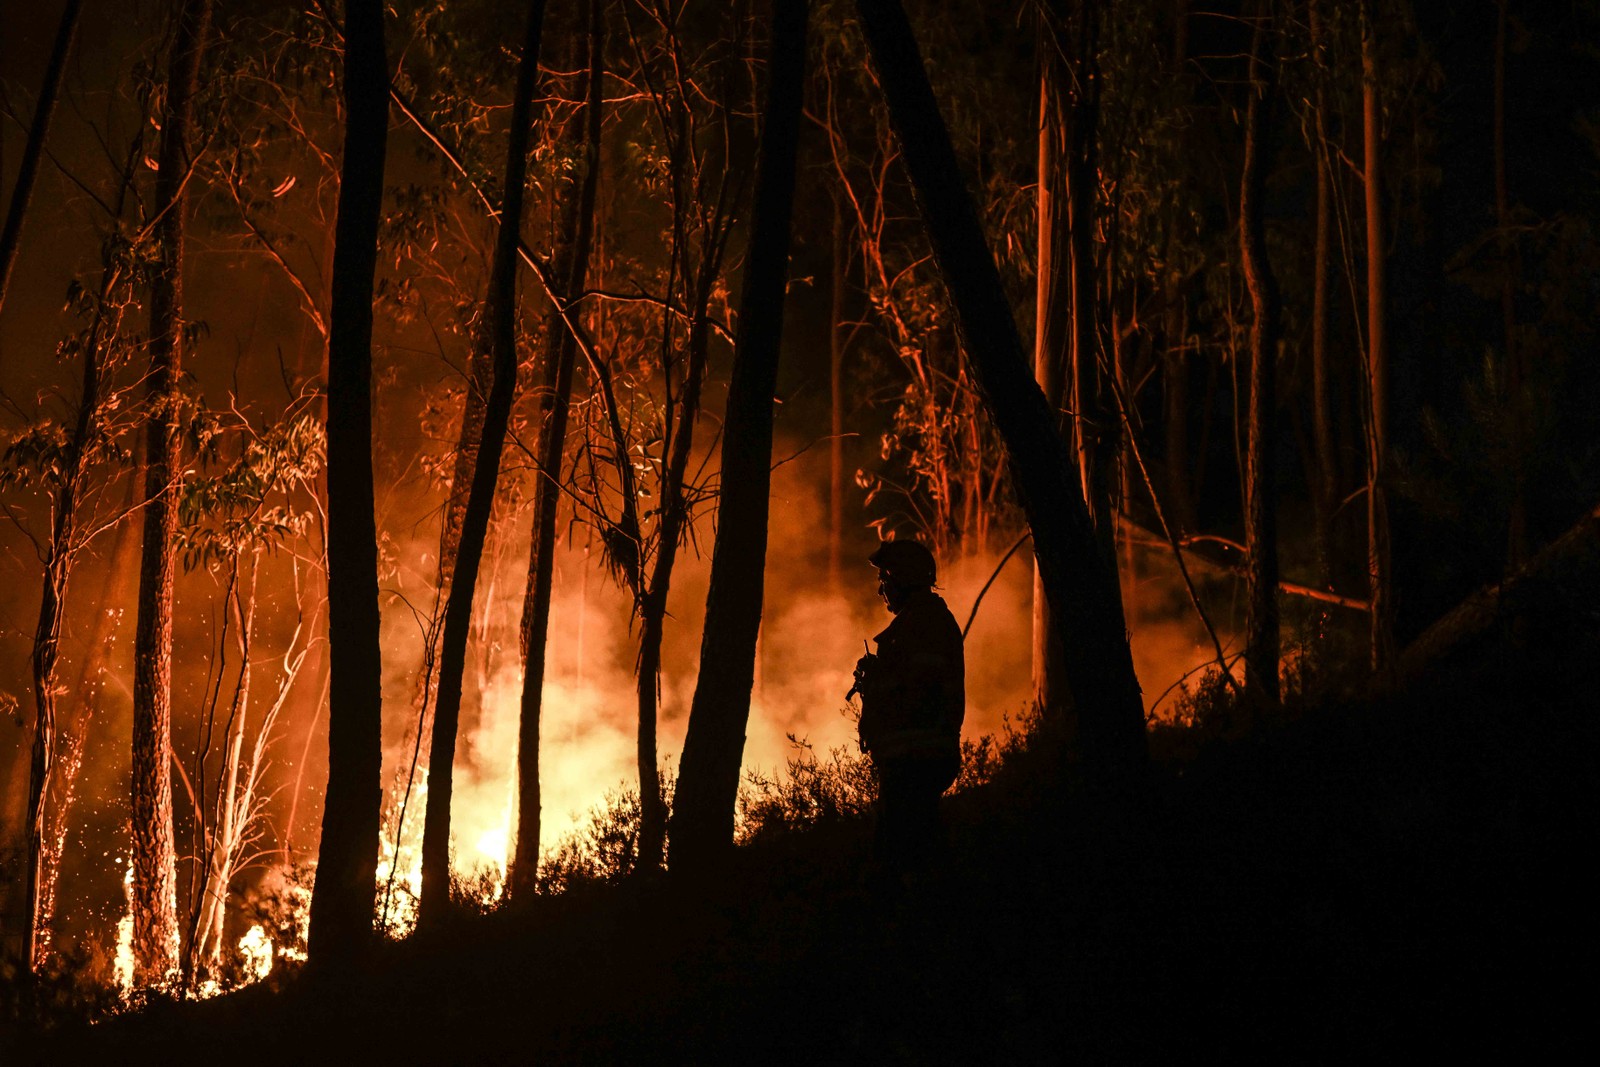 Cerca de 1.500 bombeiros foram mobilizados para apagar três incêndios florestais que duram mais de 48 horas no centro e norte de Portugal — Foto: PATRICIA DE MELO MOREIRA / AFP